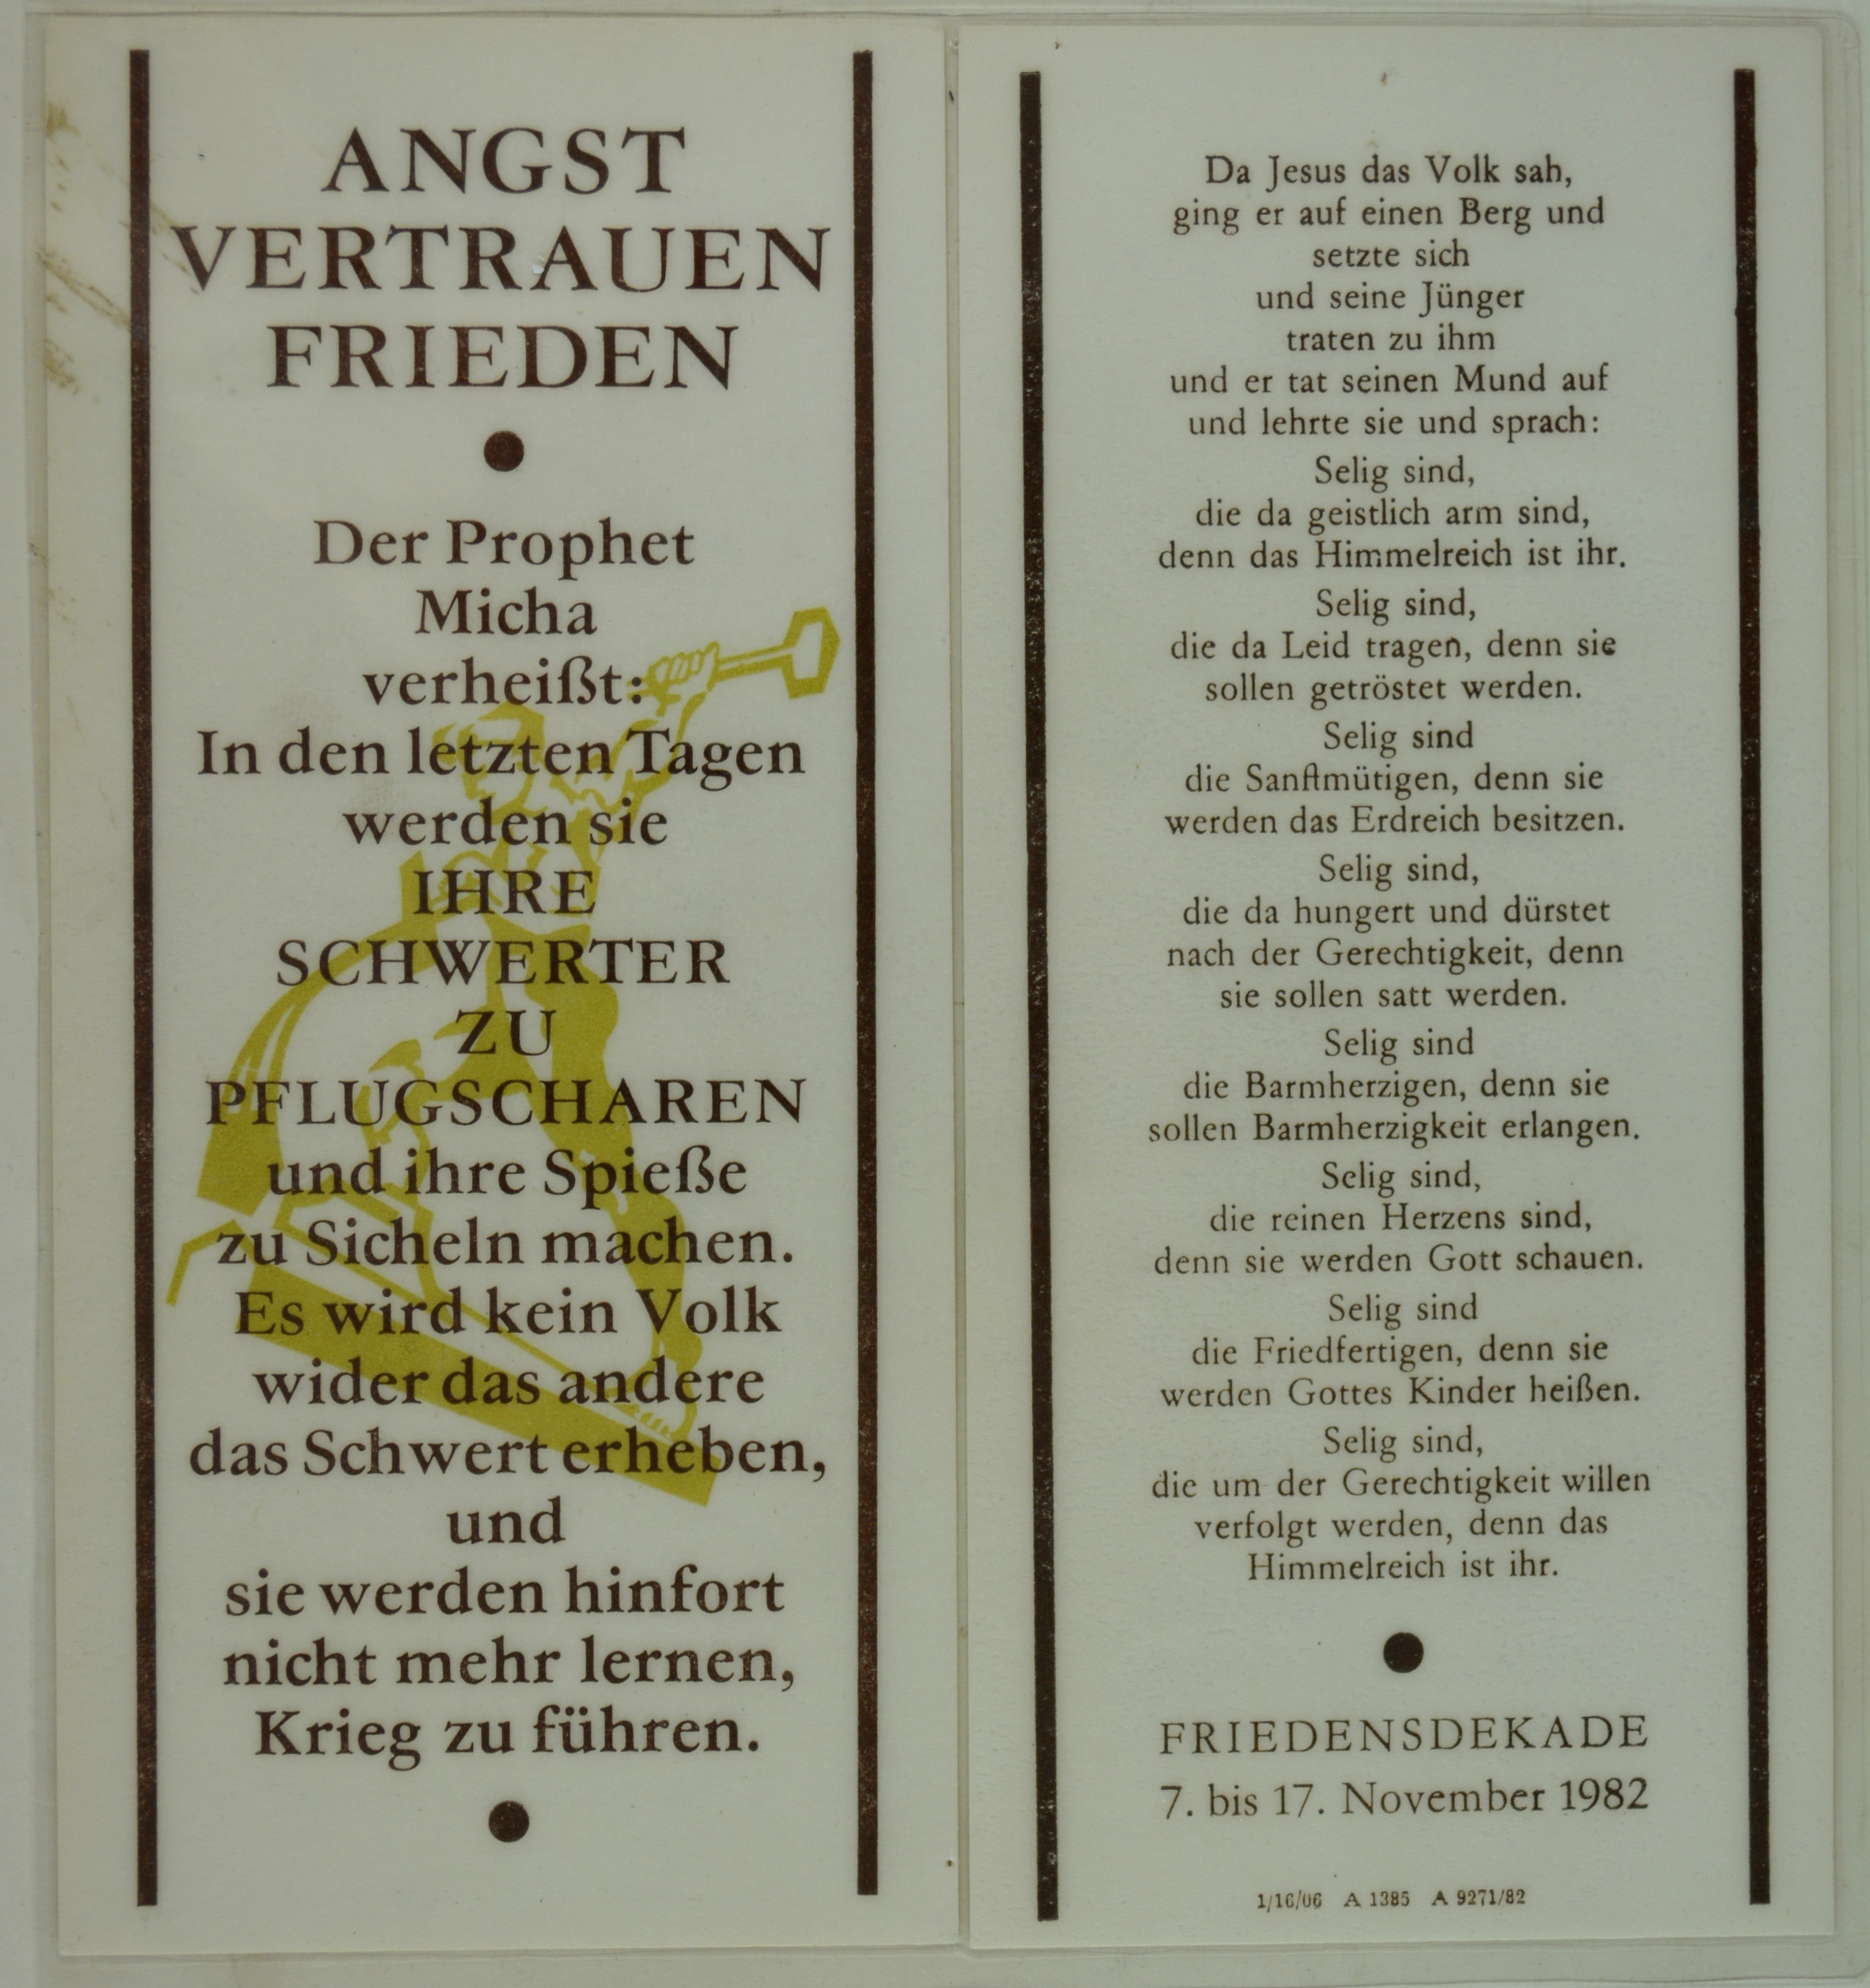 Friedensdekade '82: "Angst Vertrauen Frieden" (DDR Geschichtsmuseum im Dokumentationszentrum Perleberg CC BY-SA)